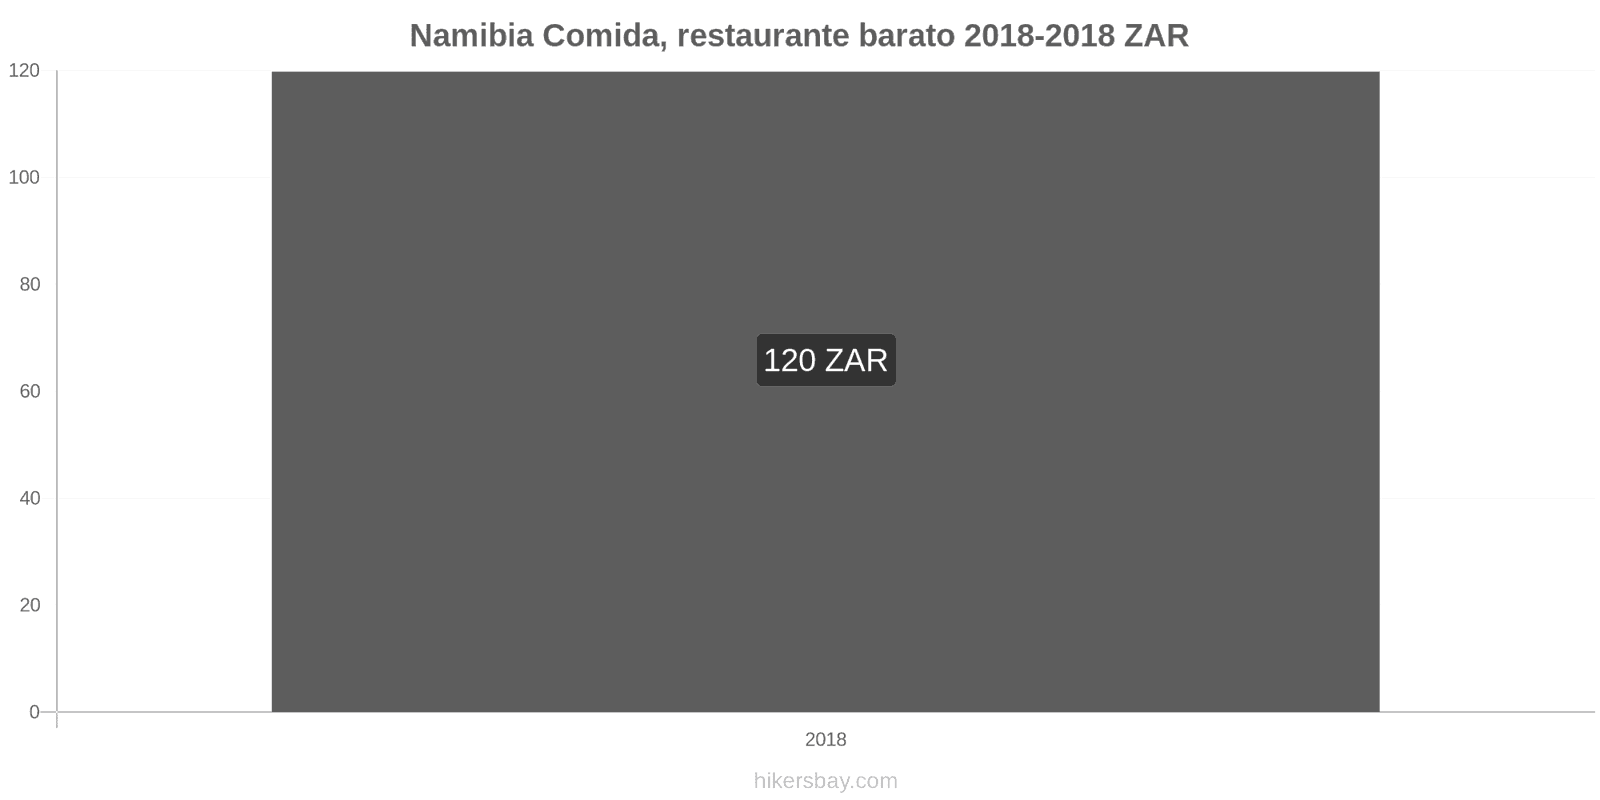 Namibia cambios de precios Comida en un restaurante económico hikersbay.com